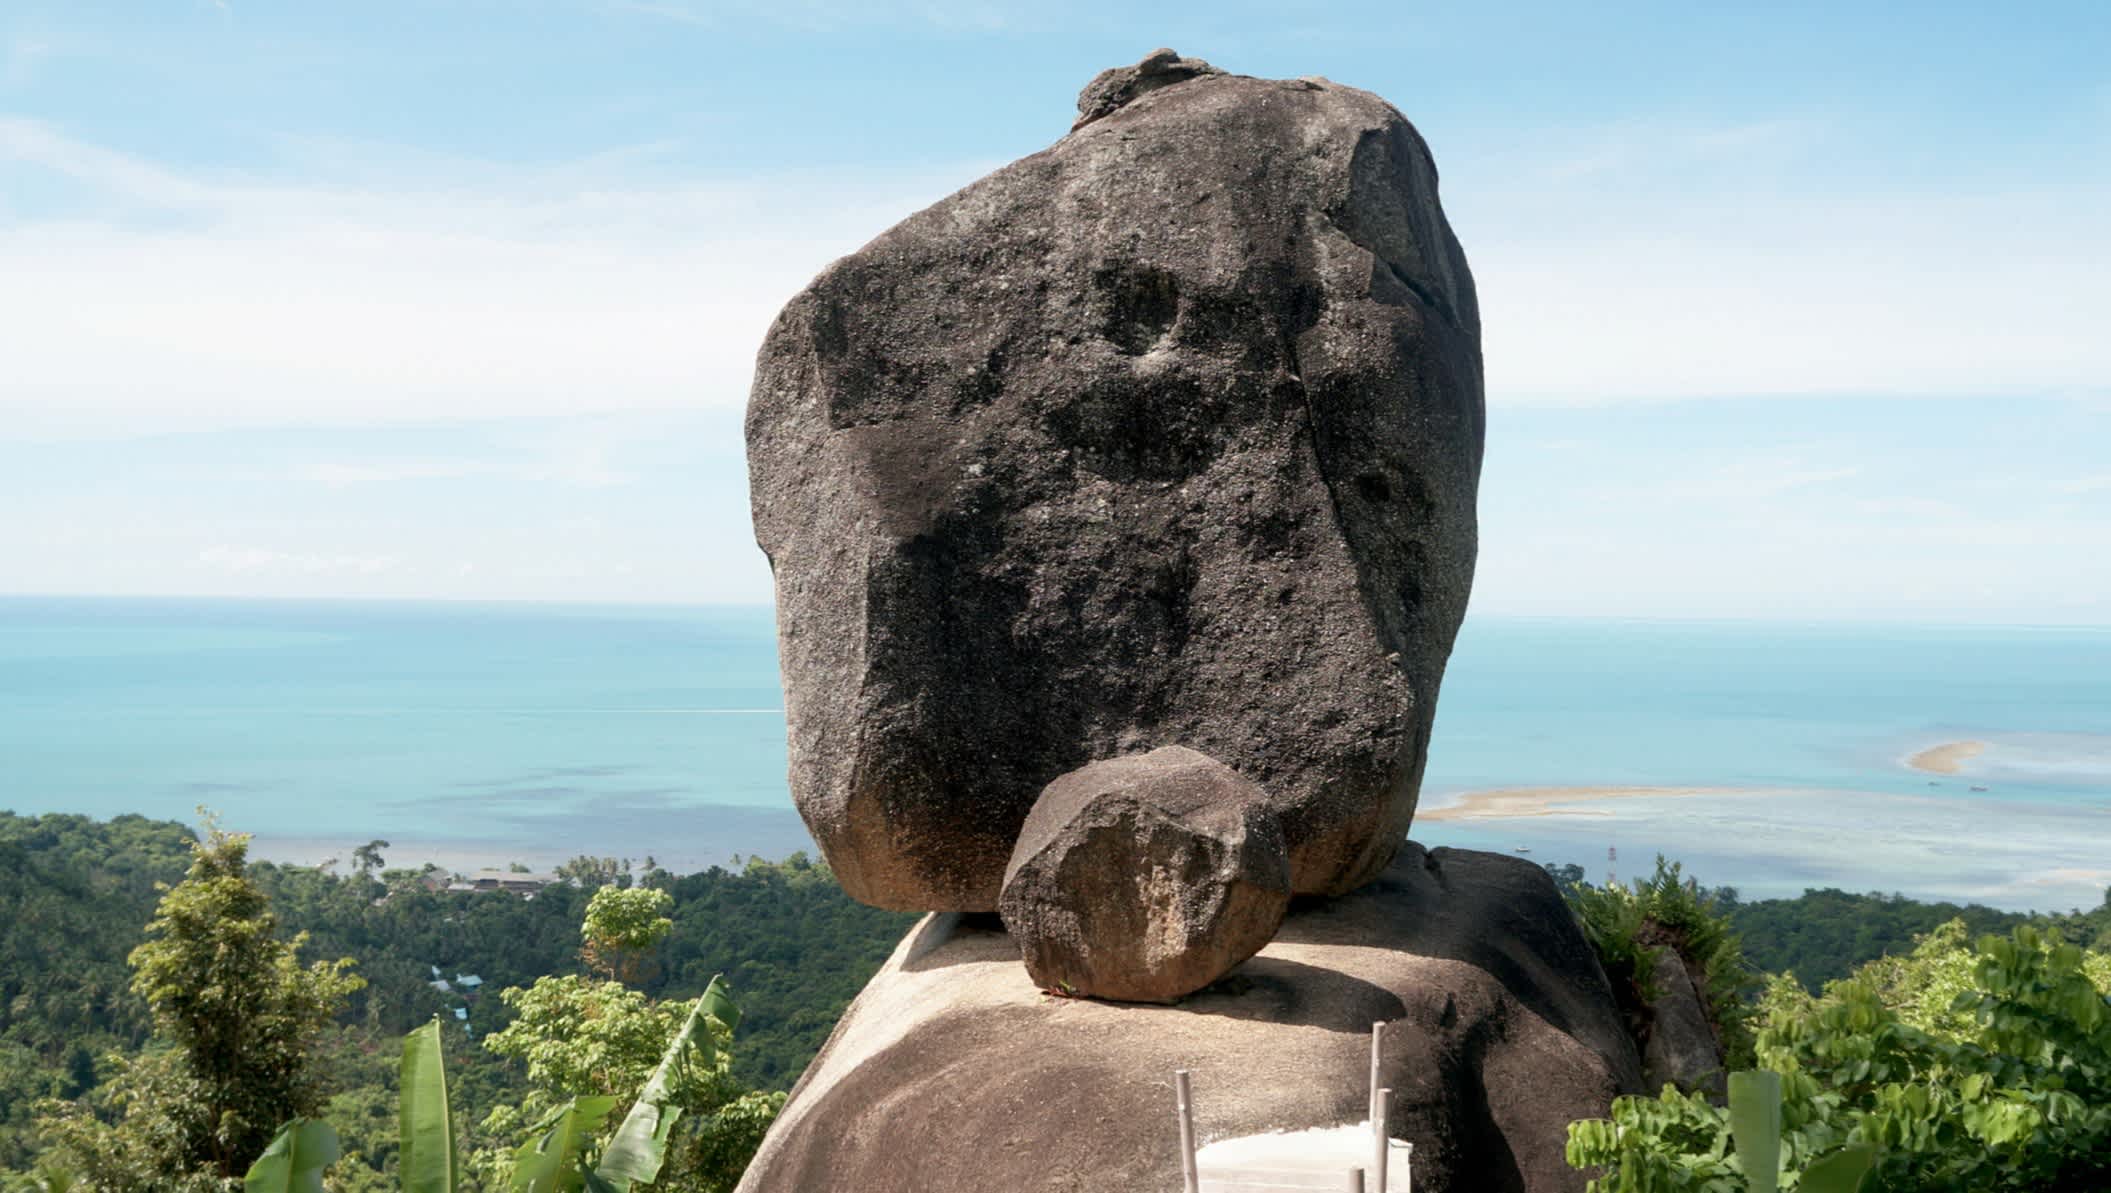 Schöner Felsen von Overlap Stone auf der Insel Samui, Thailand

